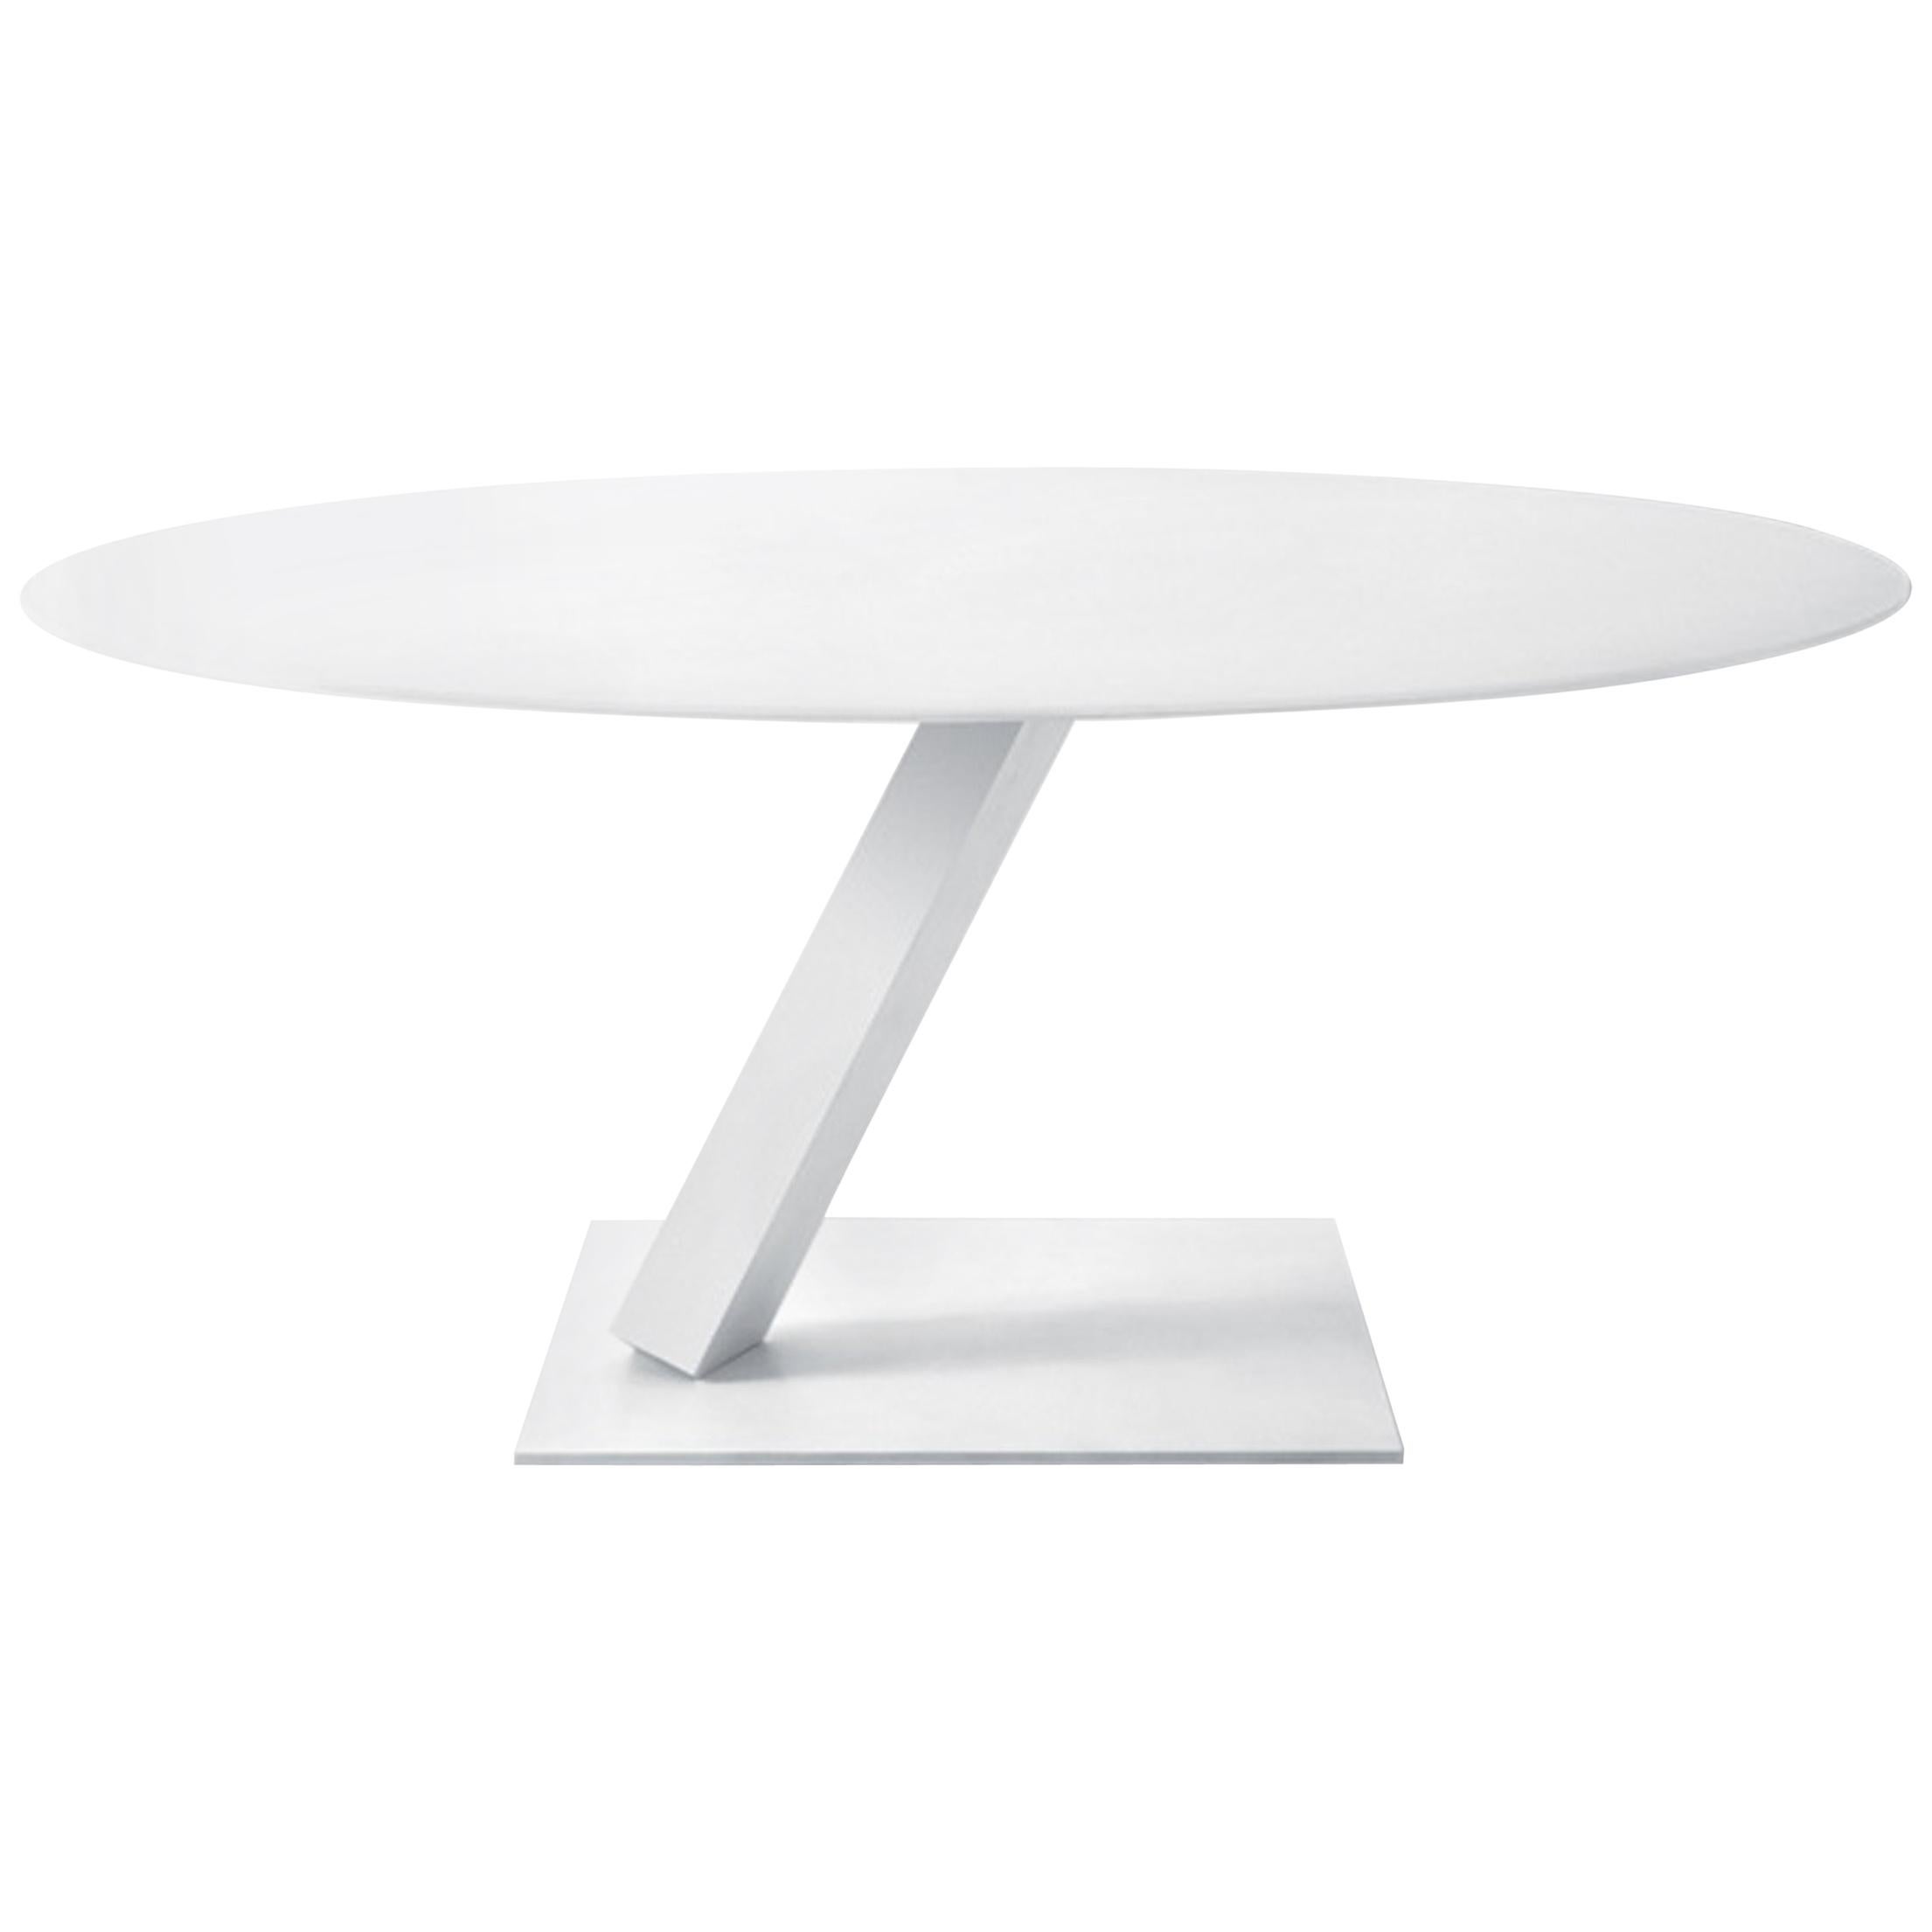 Anpassbarer runder Tisch mit Desalto-Element entworfen von Tokujin Yoshioka